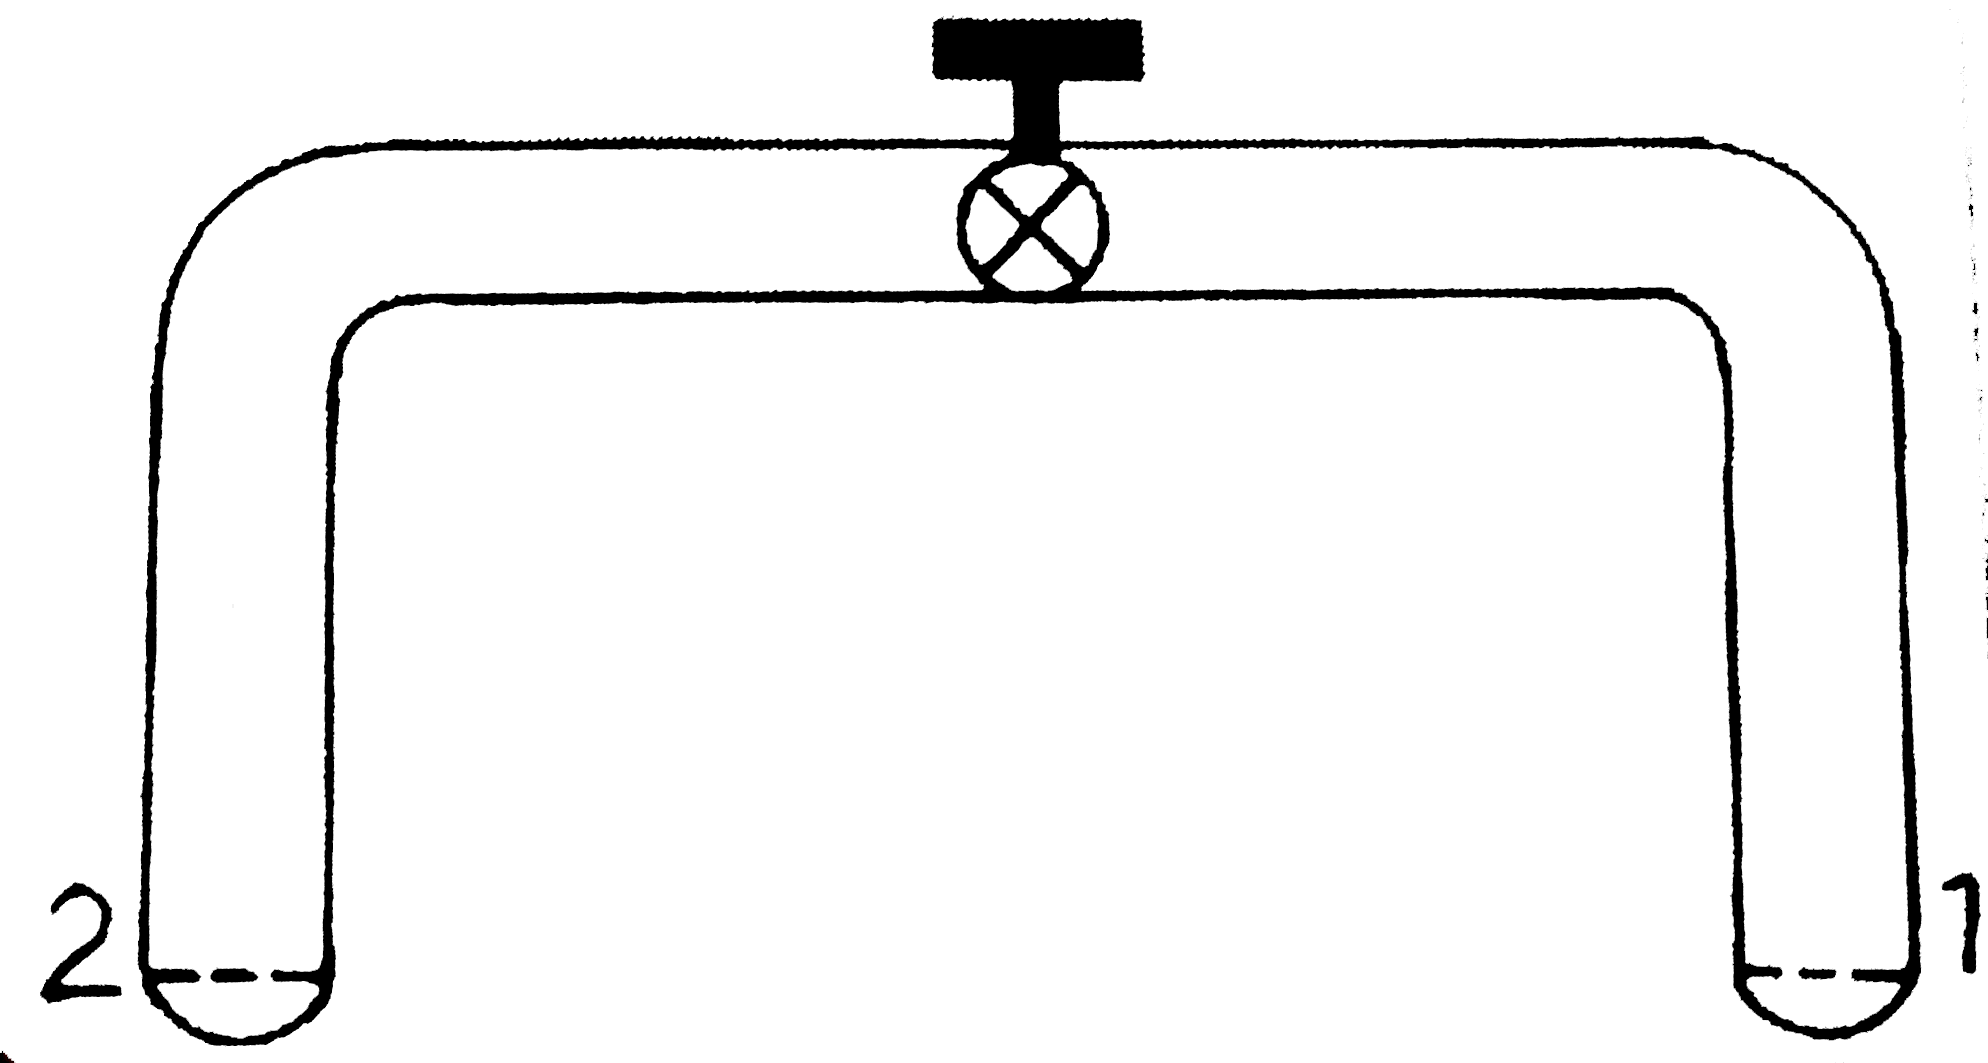 काँच  की एकसमान  नलिका , जिसकी  आंतरिक  त्रिज्या  r  है , दोनों  सिरों  को , जो  एक जैसे  है , एक  वाल्व  के द्वारा  पृथक  किया गया है । प्रारम्भ  में वाल्व  बंद है ।  सिरे - 1  पर त्रिज्या  r  का एक  अर्द्धगोलीय  साबुन  का बुलबुला  है । सिरे  - 2  पर के उप - अर्द्ध  गोलीय  ( sub - hemispherical ) साबुन  का बुलबुला  है । वाल्व  के खोलते ही  :